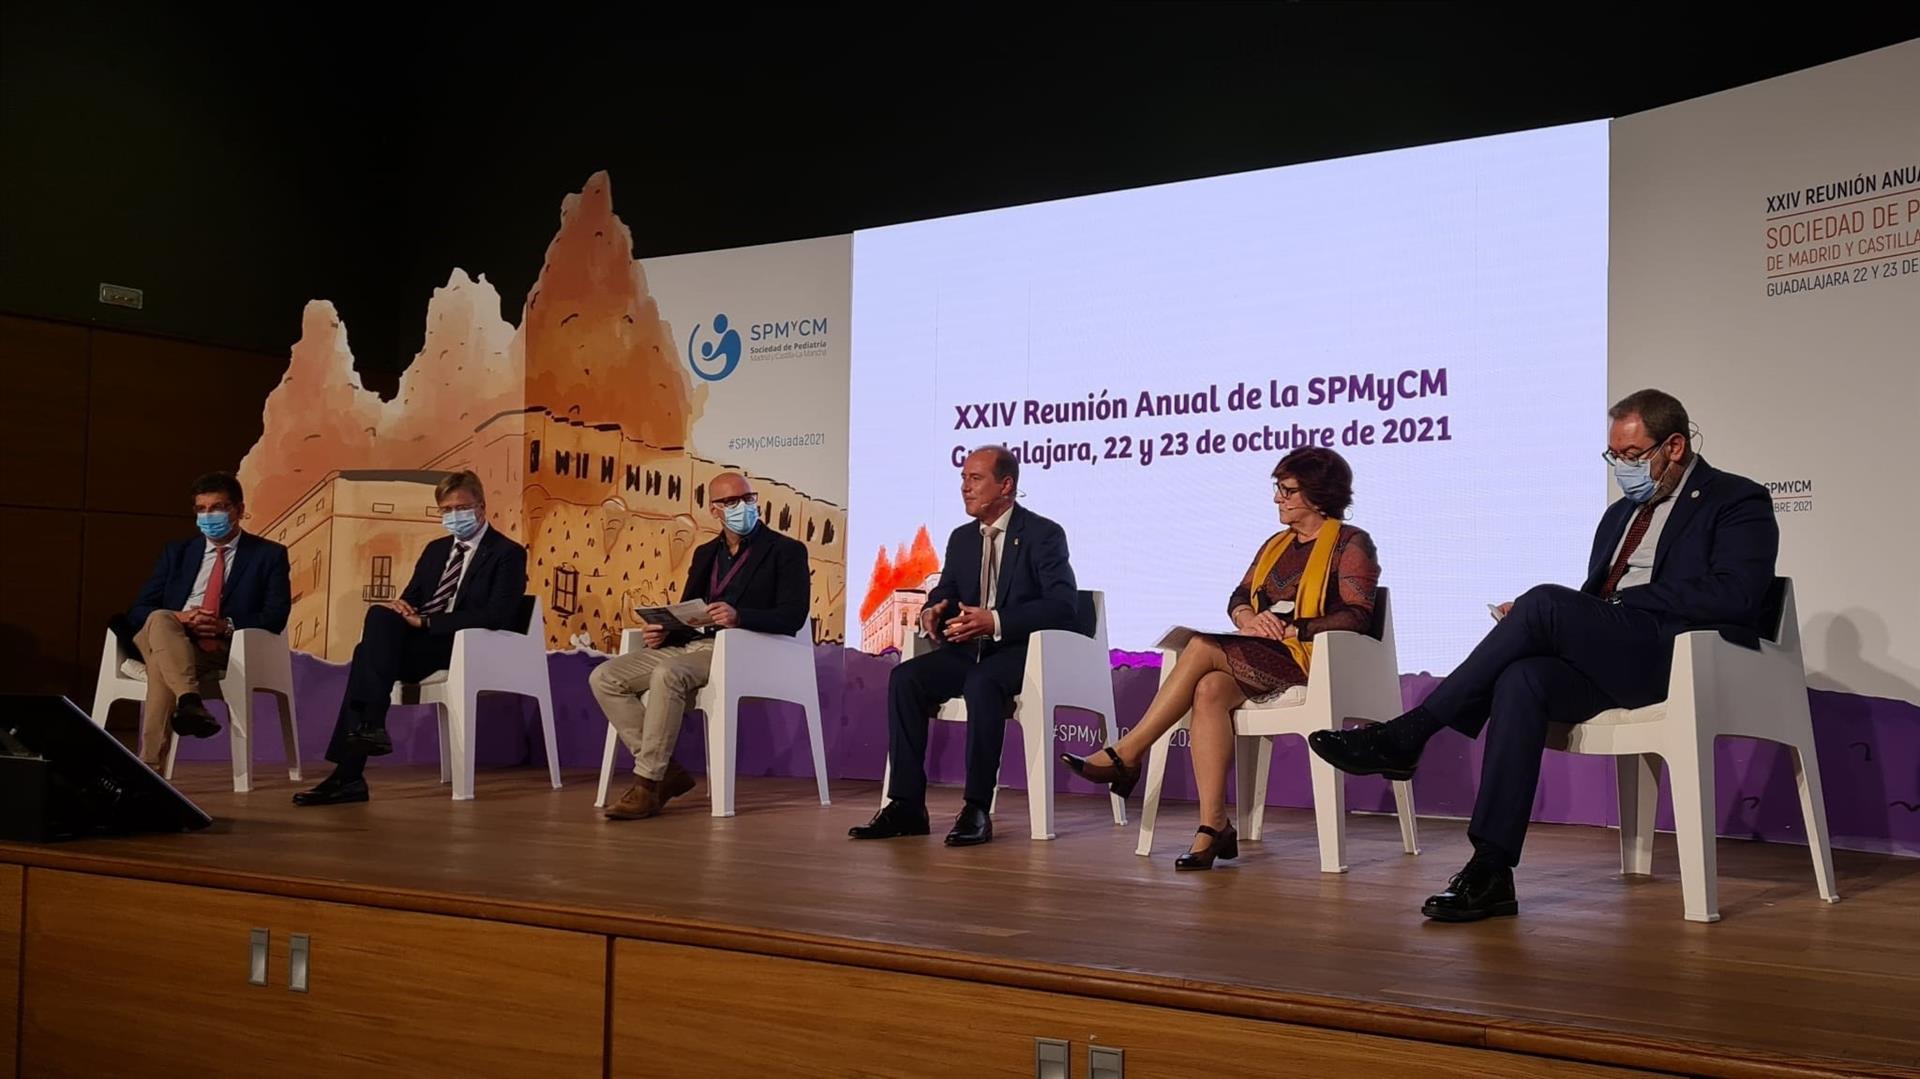 Inauguración de la XXIV Reunión Anual de la SPMyCM, el 22 de octubre de 2021, en Guadalajara. (Foto: EP)